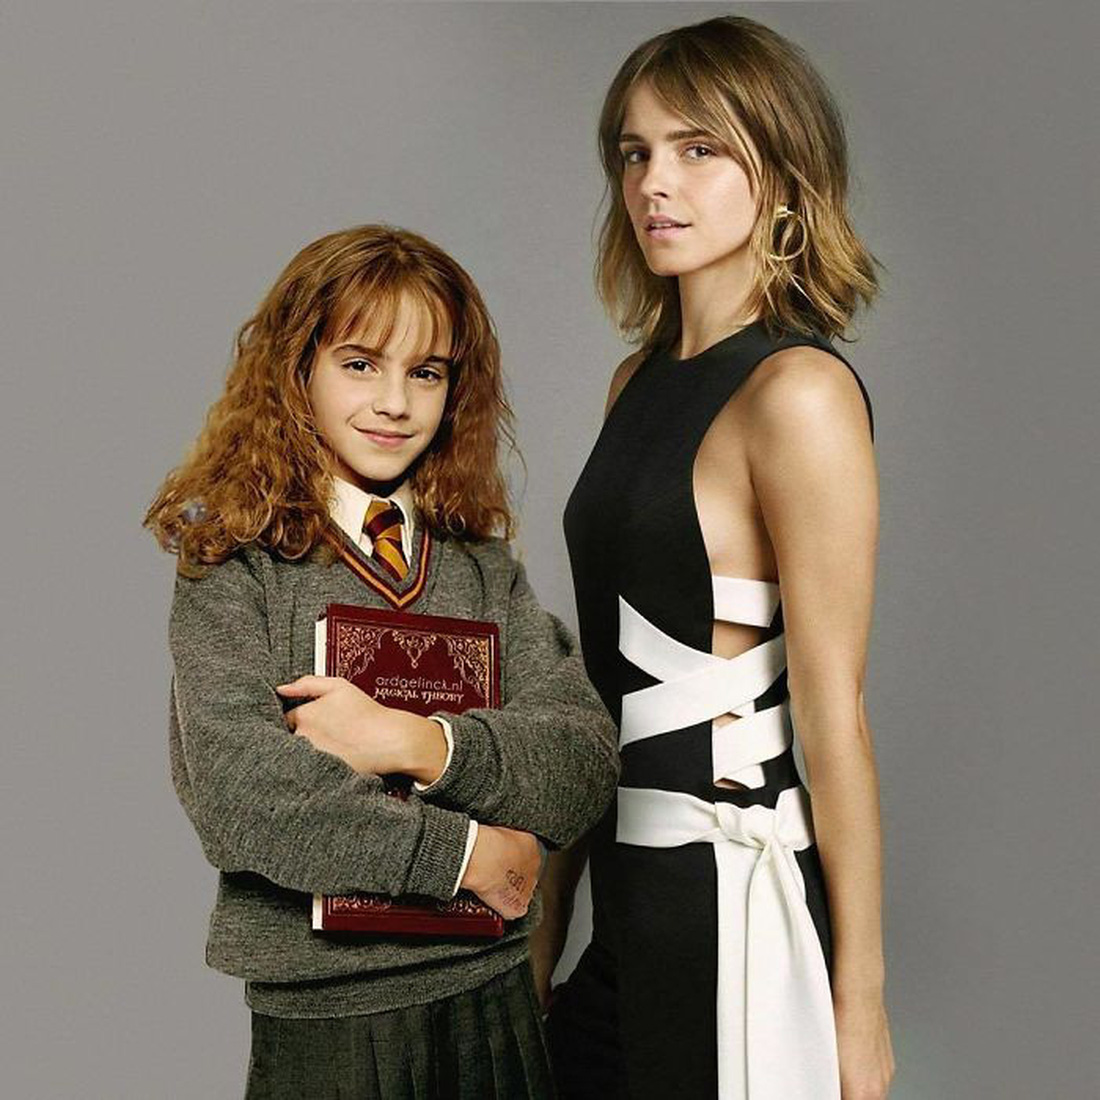 Jennifer Aniston, Tom Hanks, Brad Pitt, Johnny Depp... khoác vai chính mình thời trẻ - Ảnh 12.